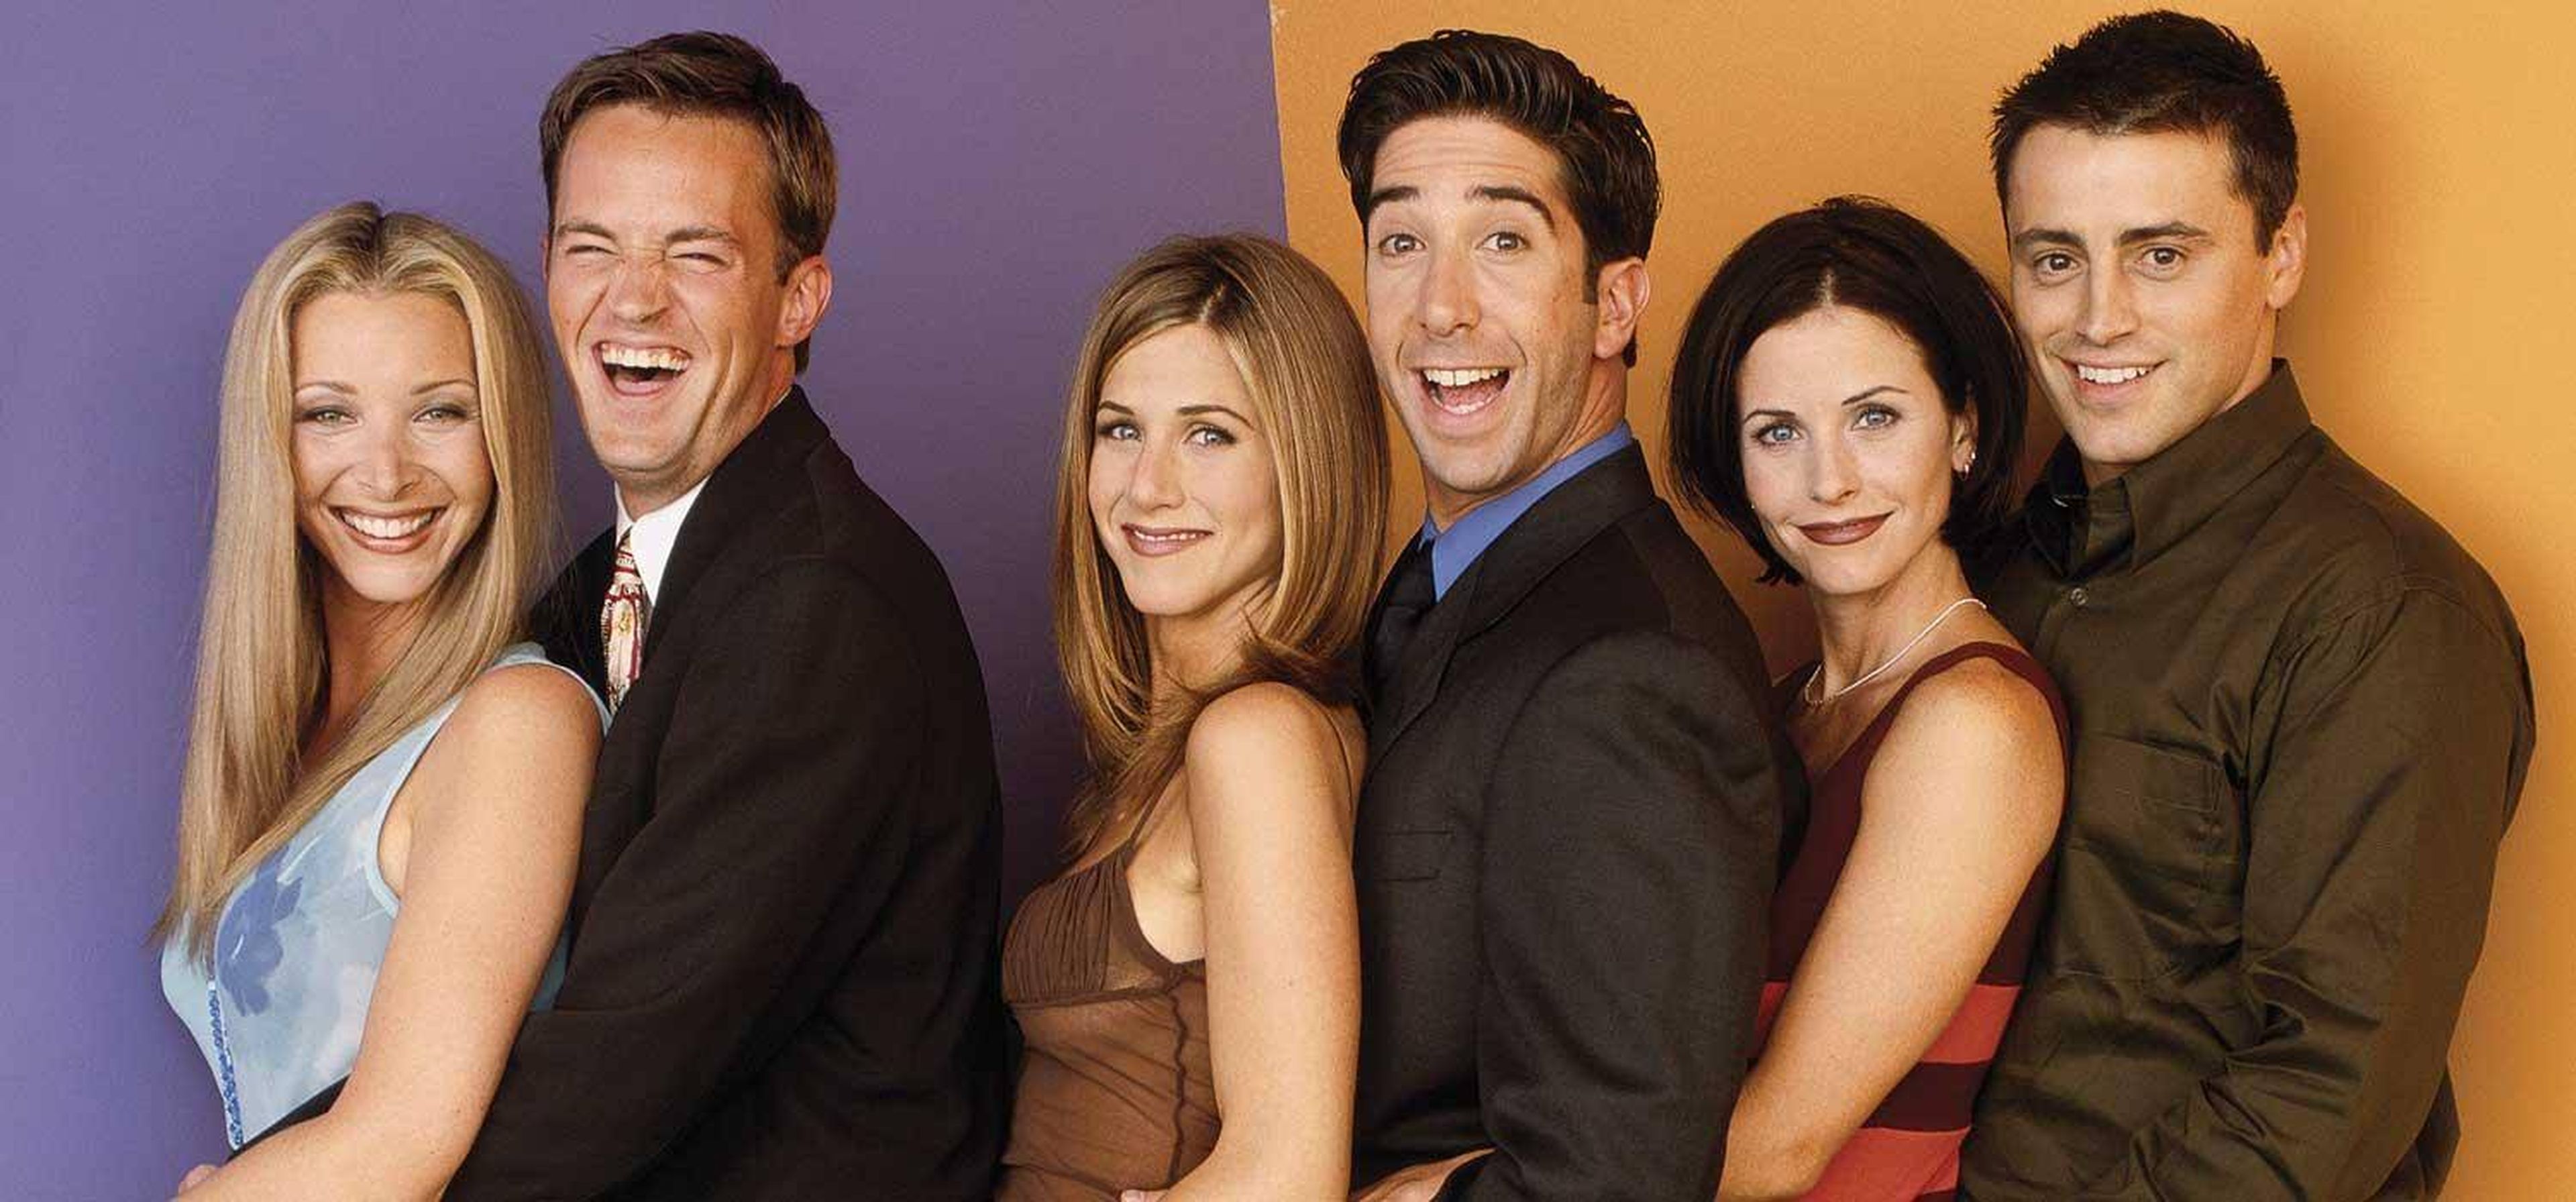 Las mil y una referencias a 'Friends' que hay en otras series de televisión